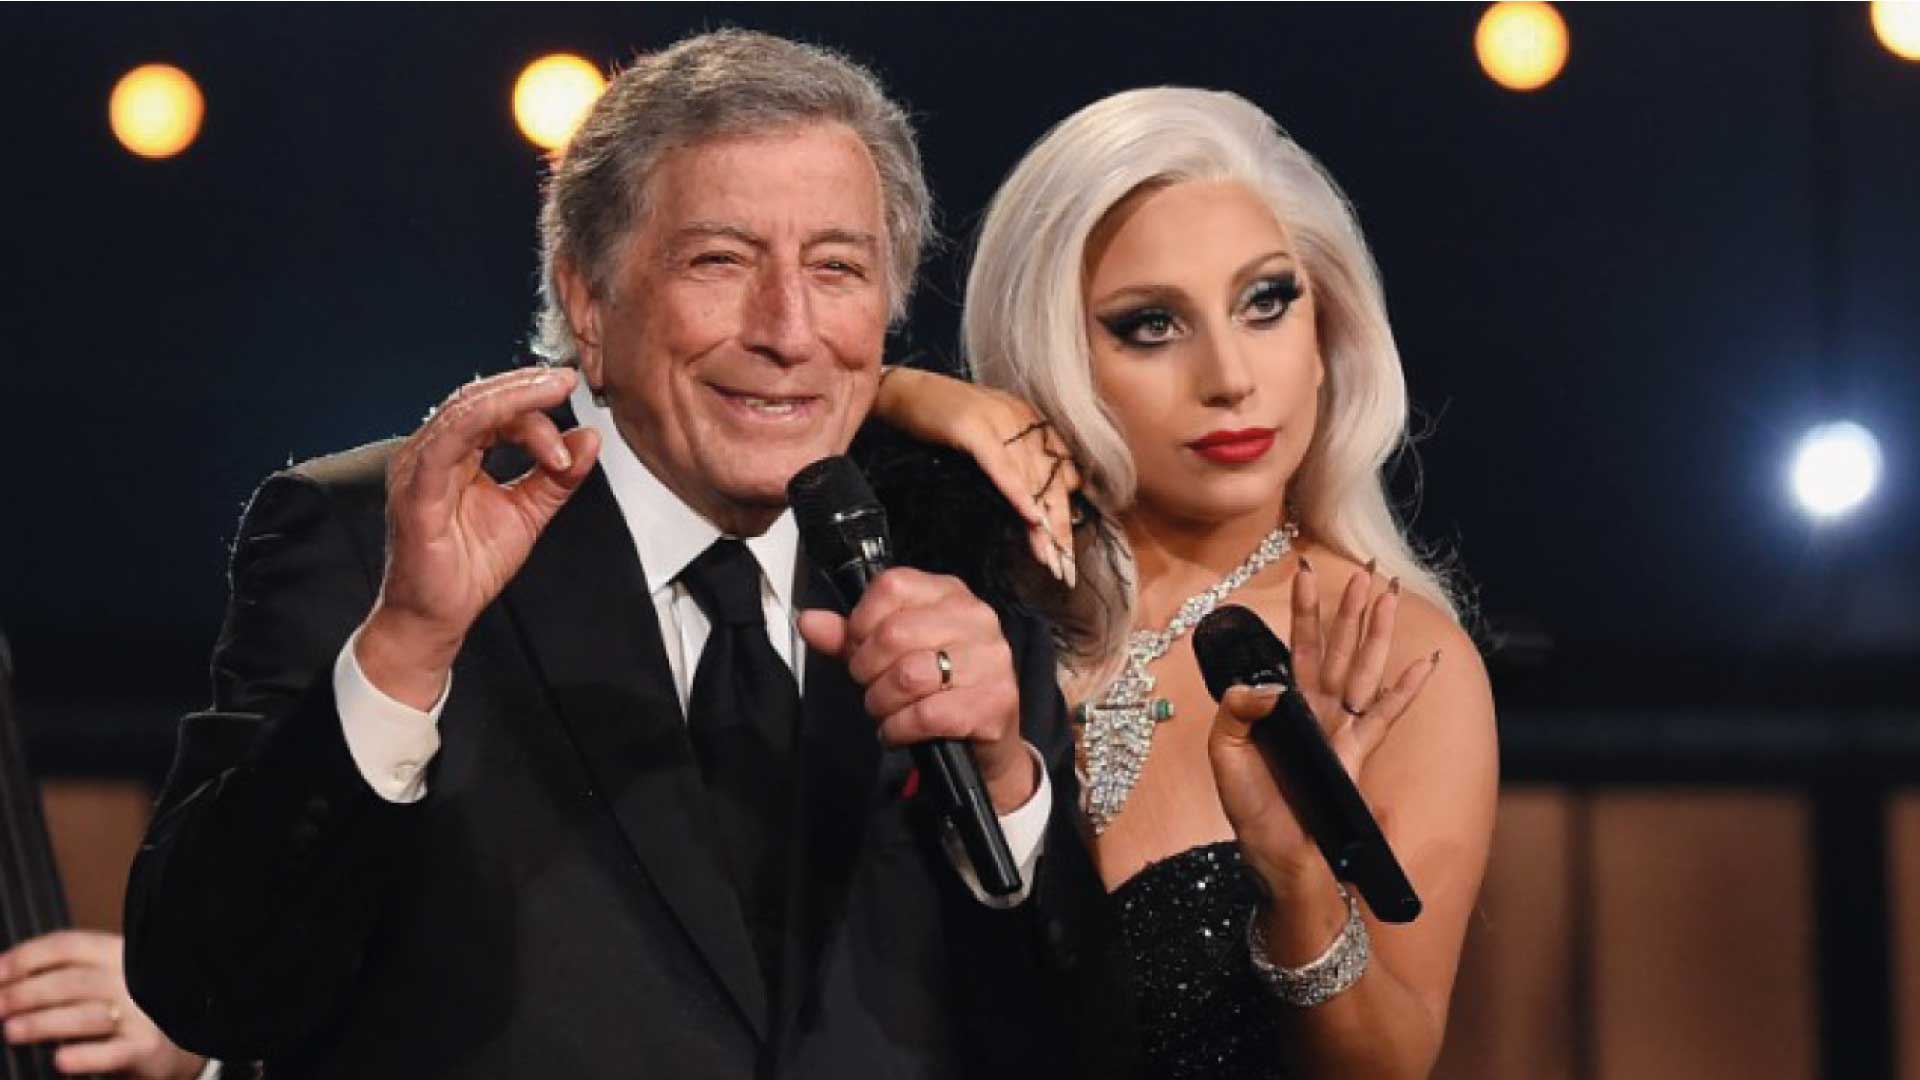 Lady Gaga y Tony Bennett obtienen una nominación al Emmy por One Last Time, después de unos años después de su lanzamiento.